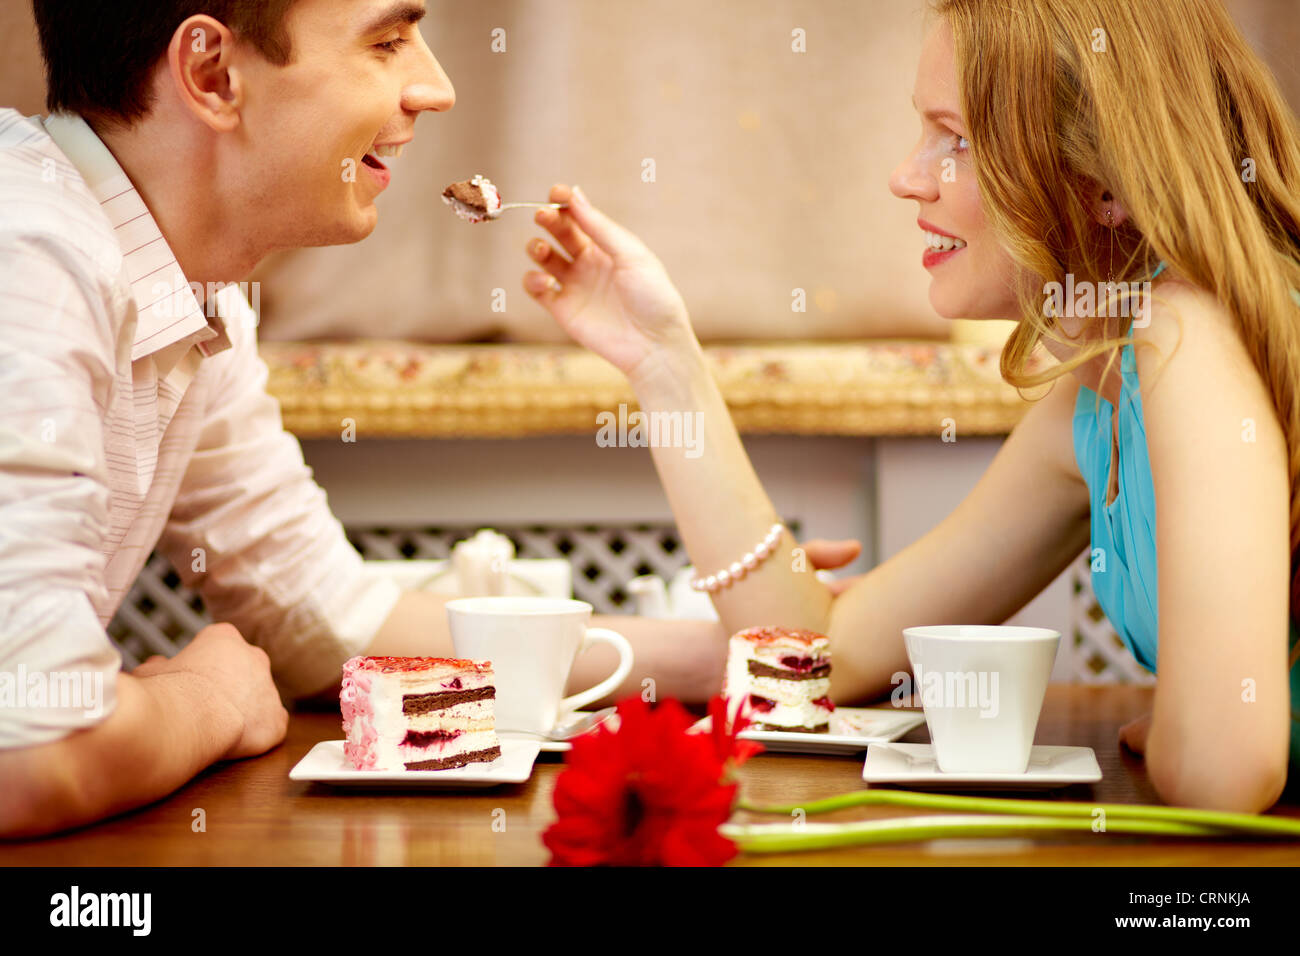 Сладостная жизнь. Девушка в кафе с десертом. Молодёжь ест десерт. Картинки люди в ресторане кушают десерт. Девочка не делиться тортом.